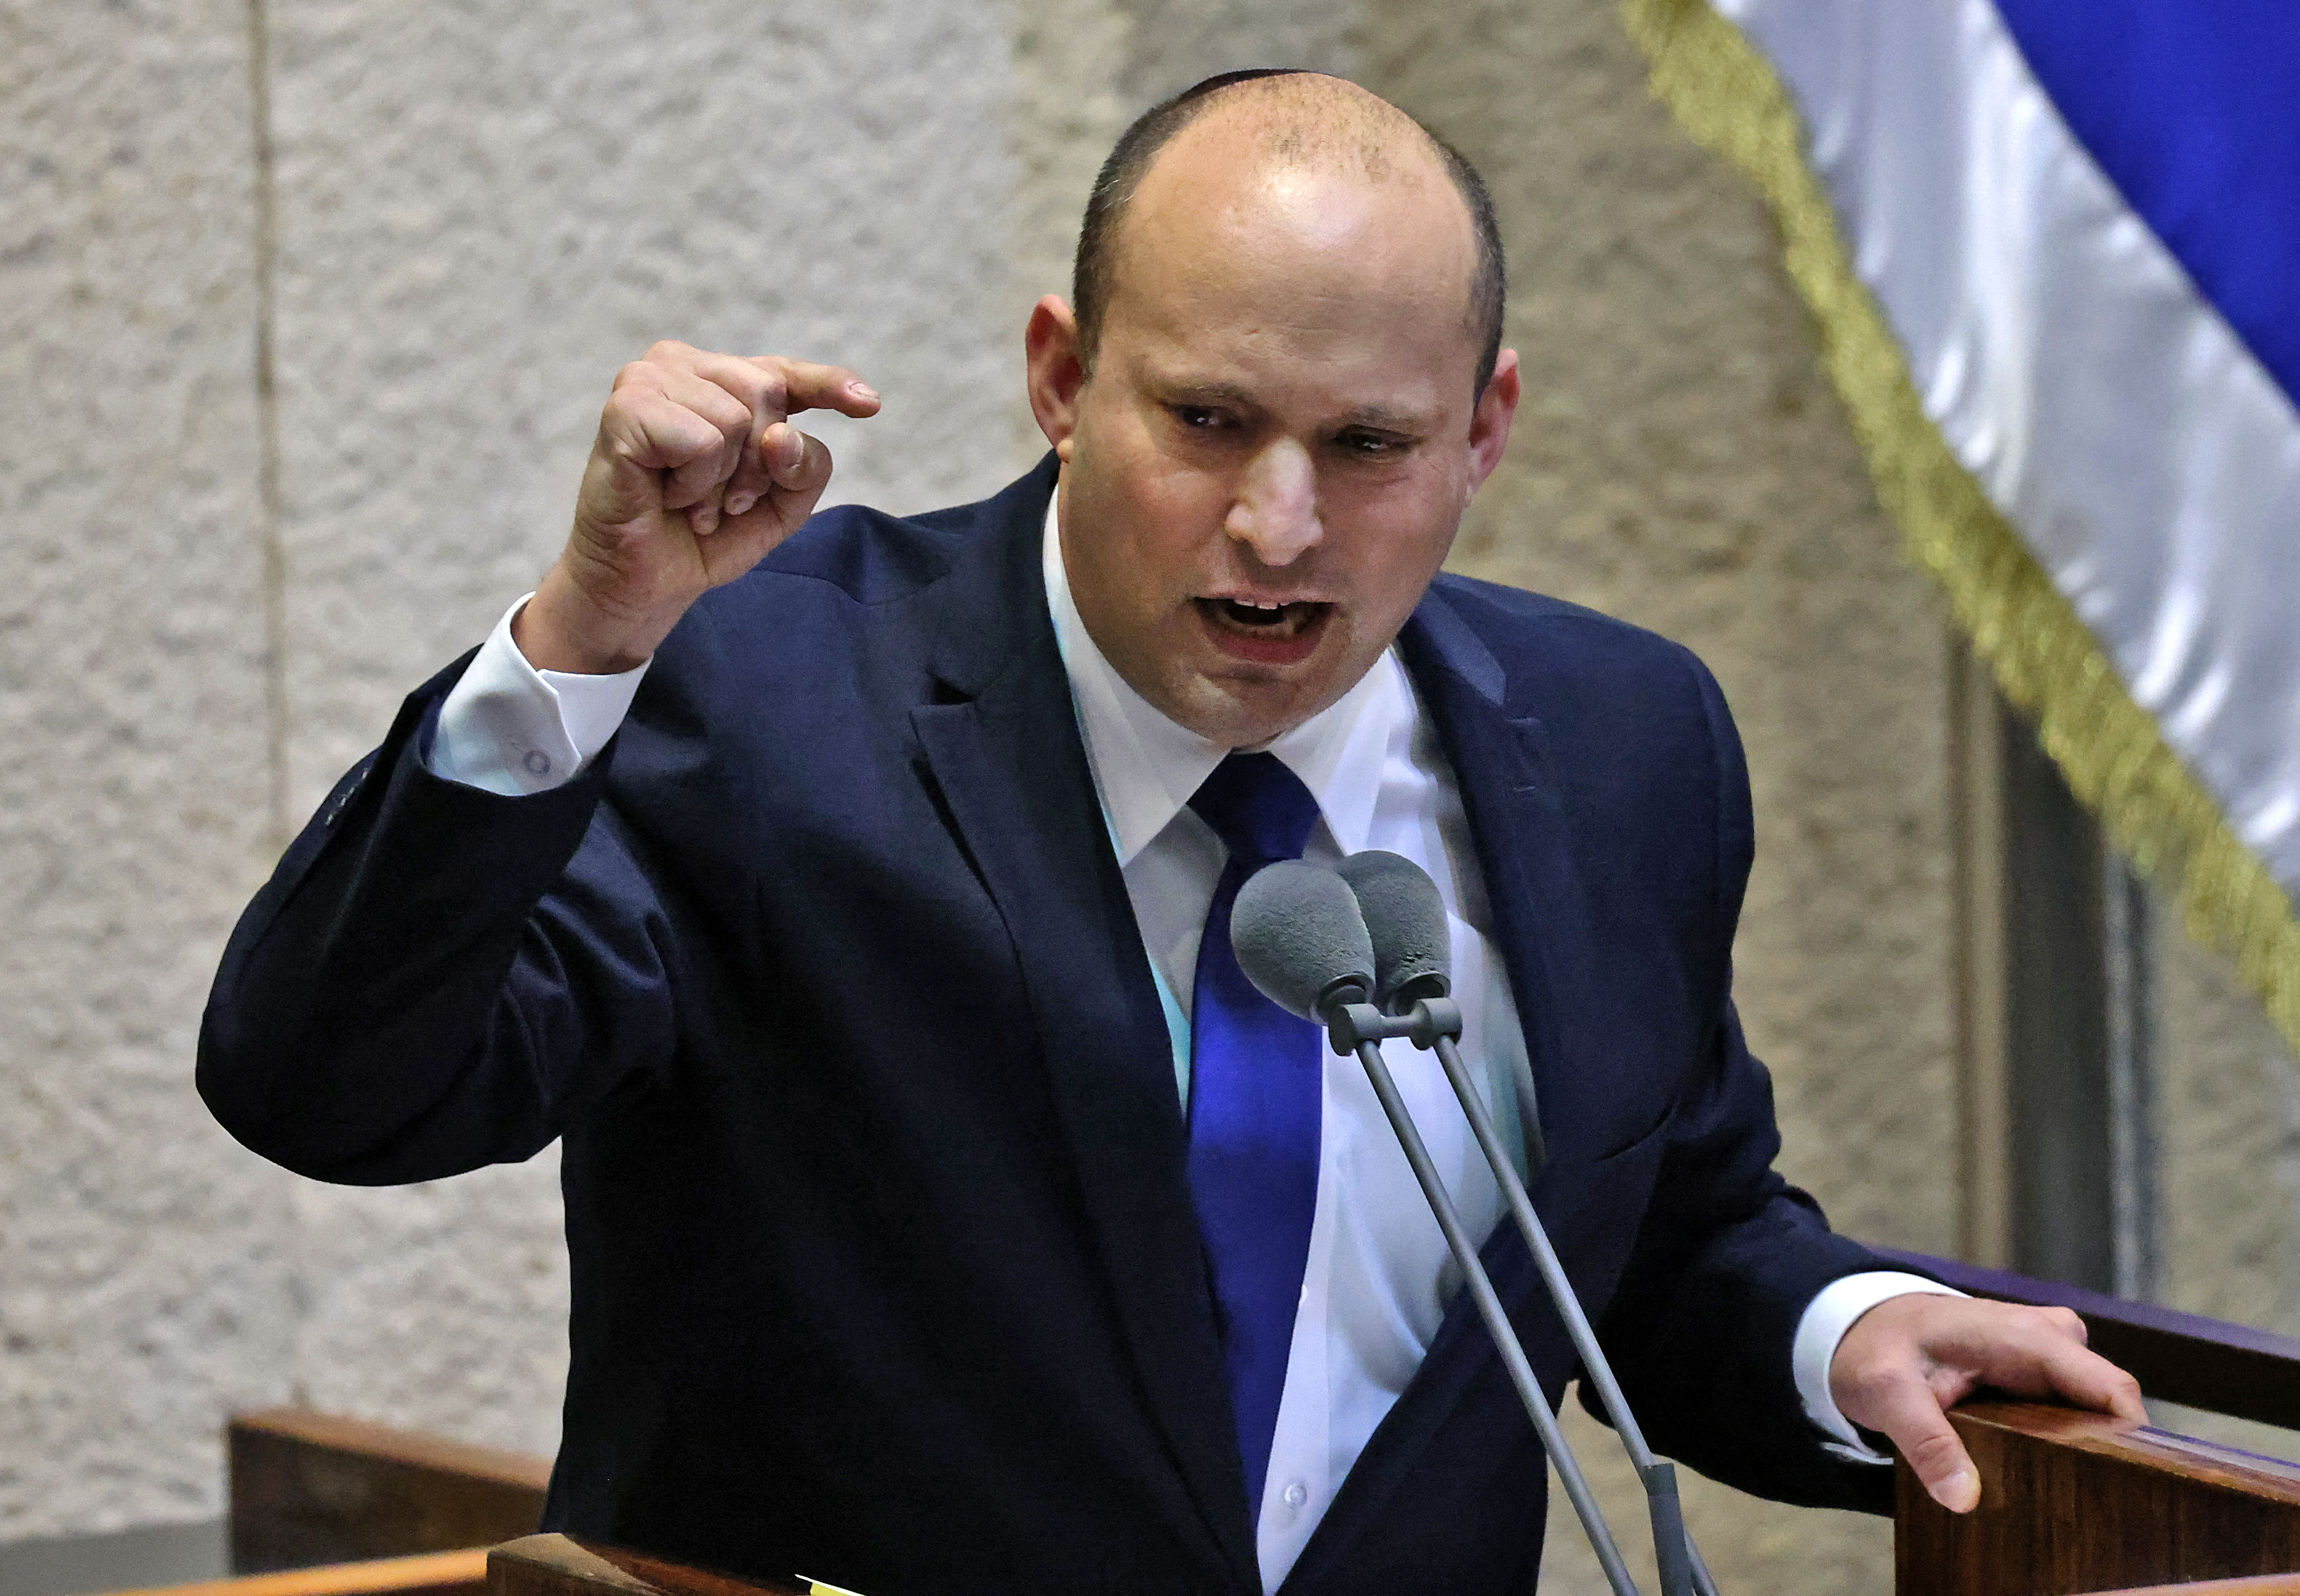 Qui est Naftali Bennett, le nouveau Premier ministre israélien